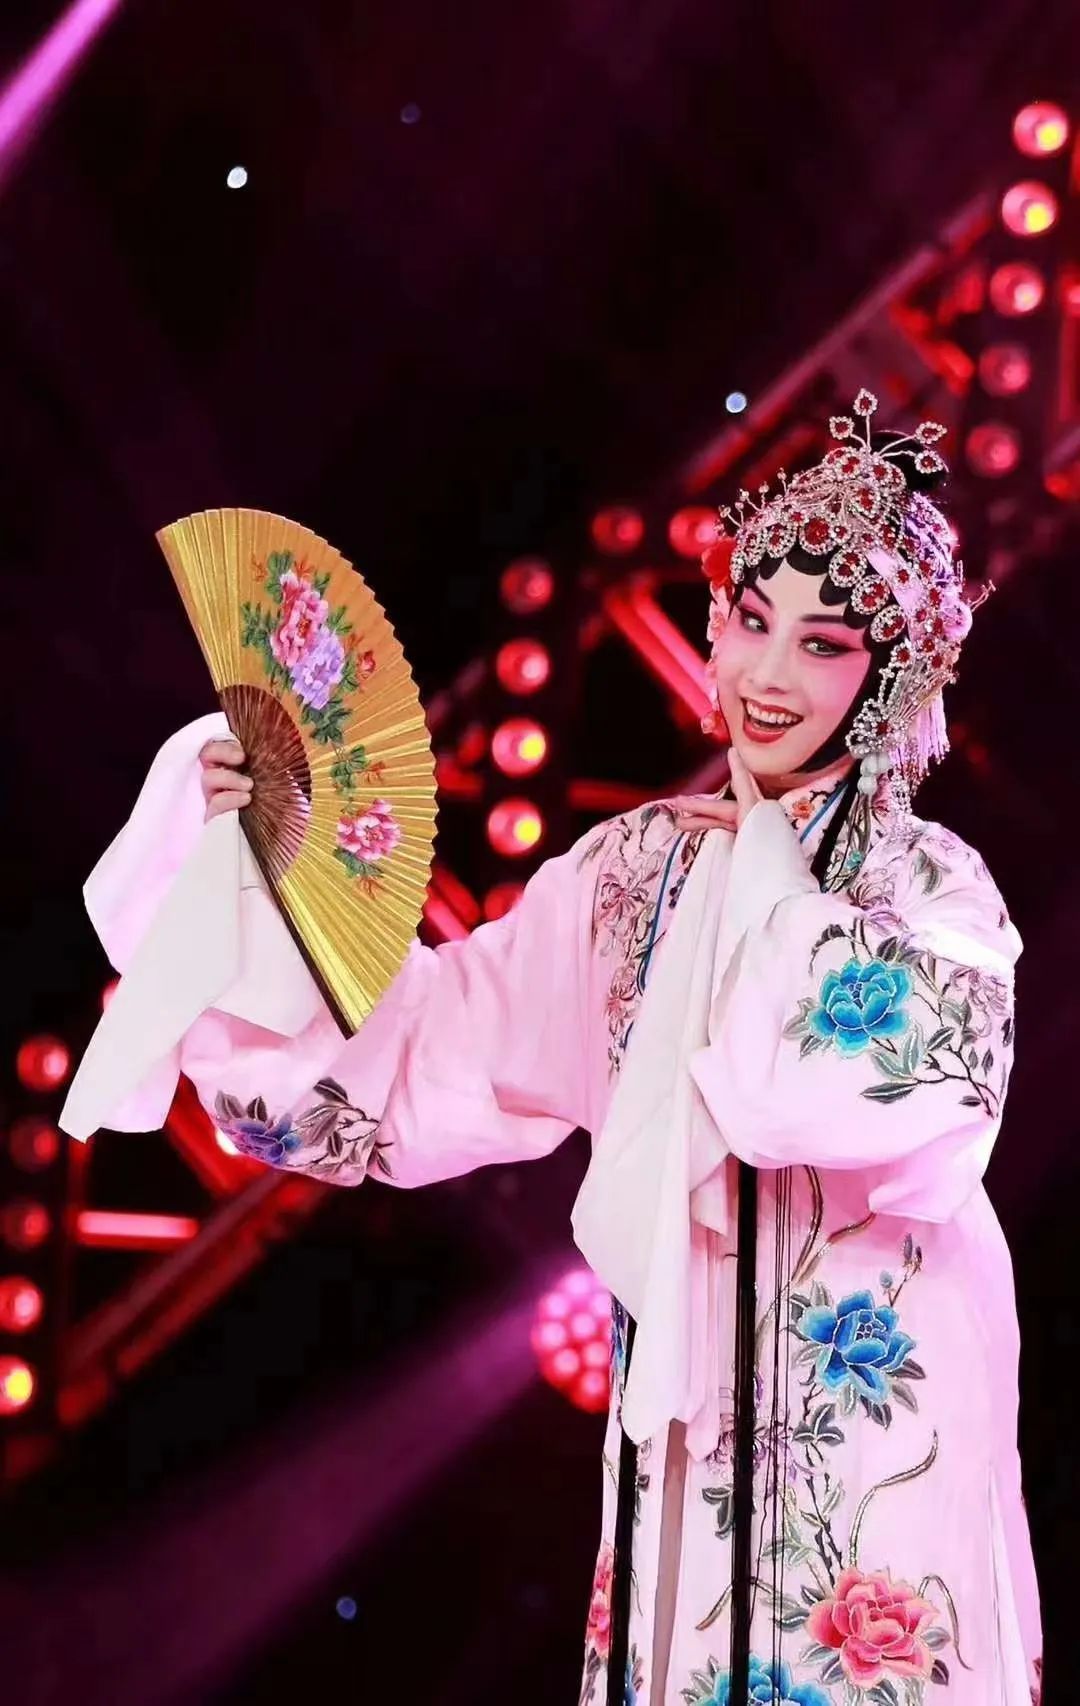 著名柳子戏表演艺术家陈媛收徒仪式在山东省柳子戏艺术保护传承中心举行